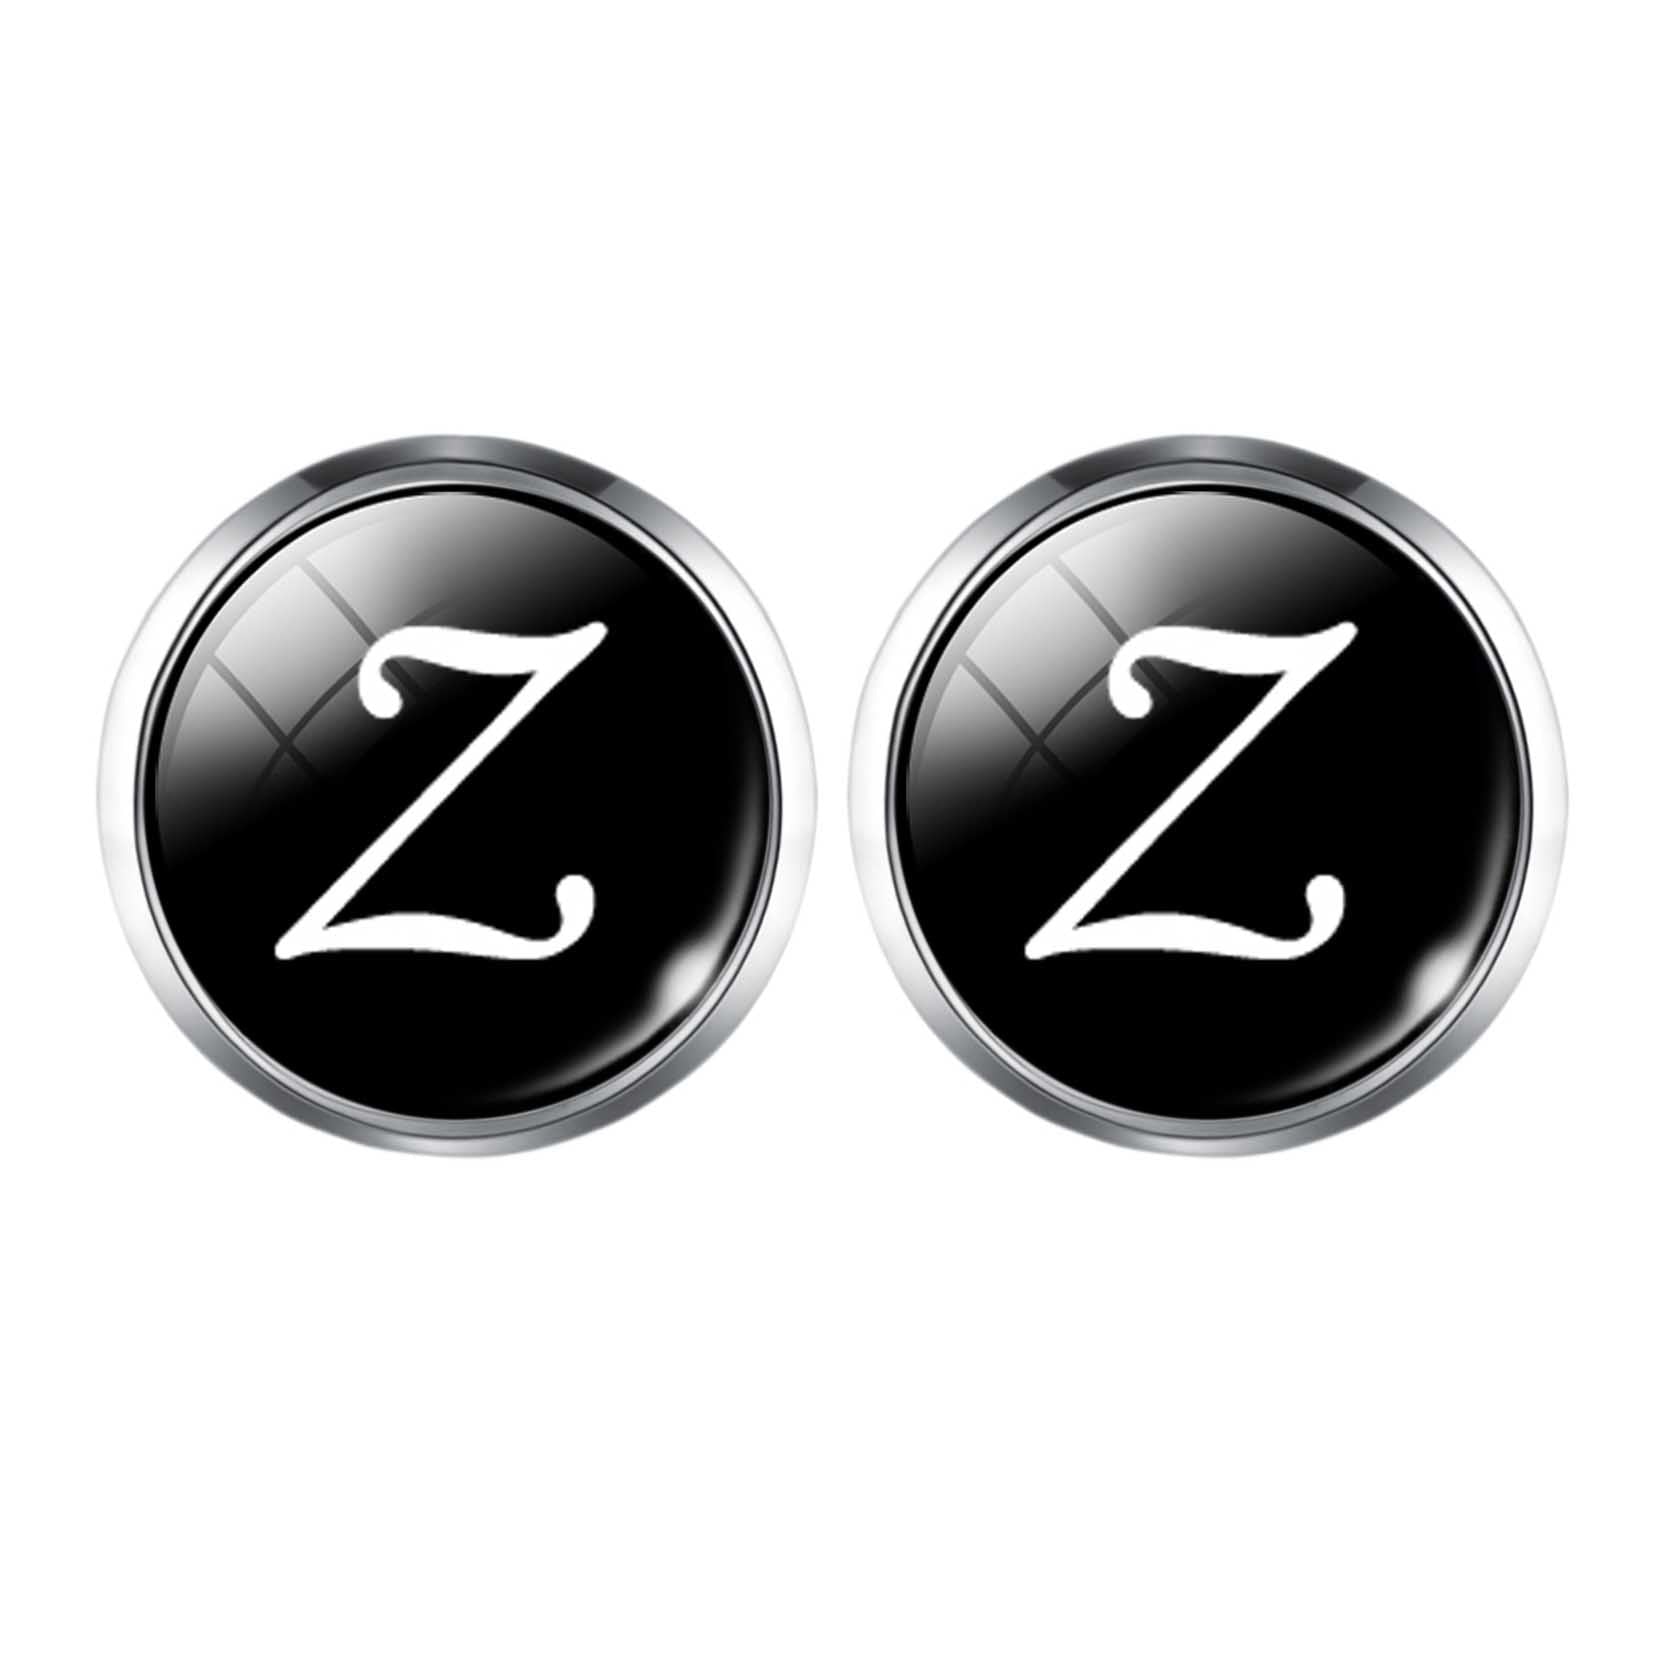 Personalized Monogram Cufflinks GR Z 